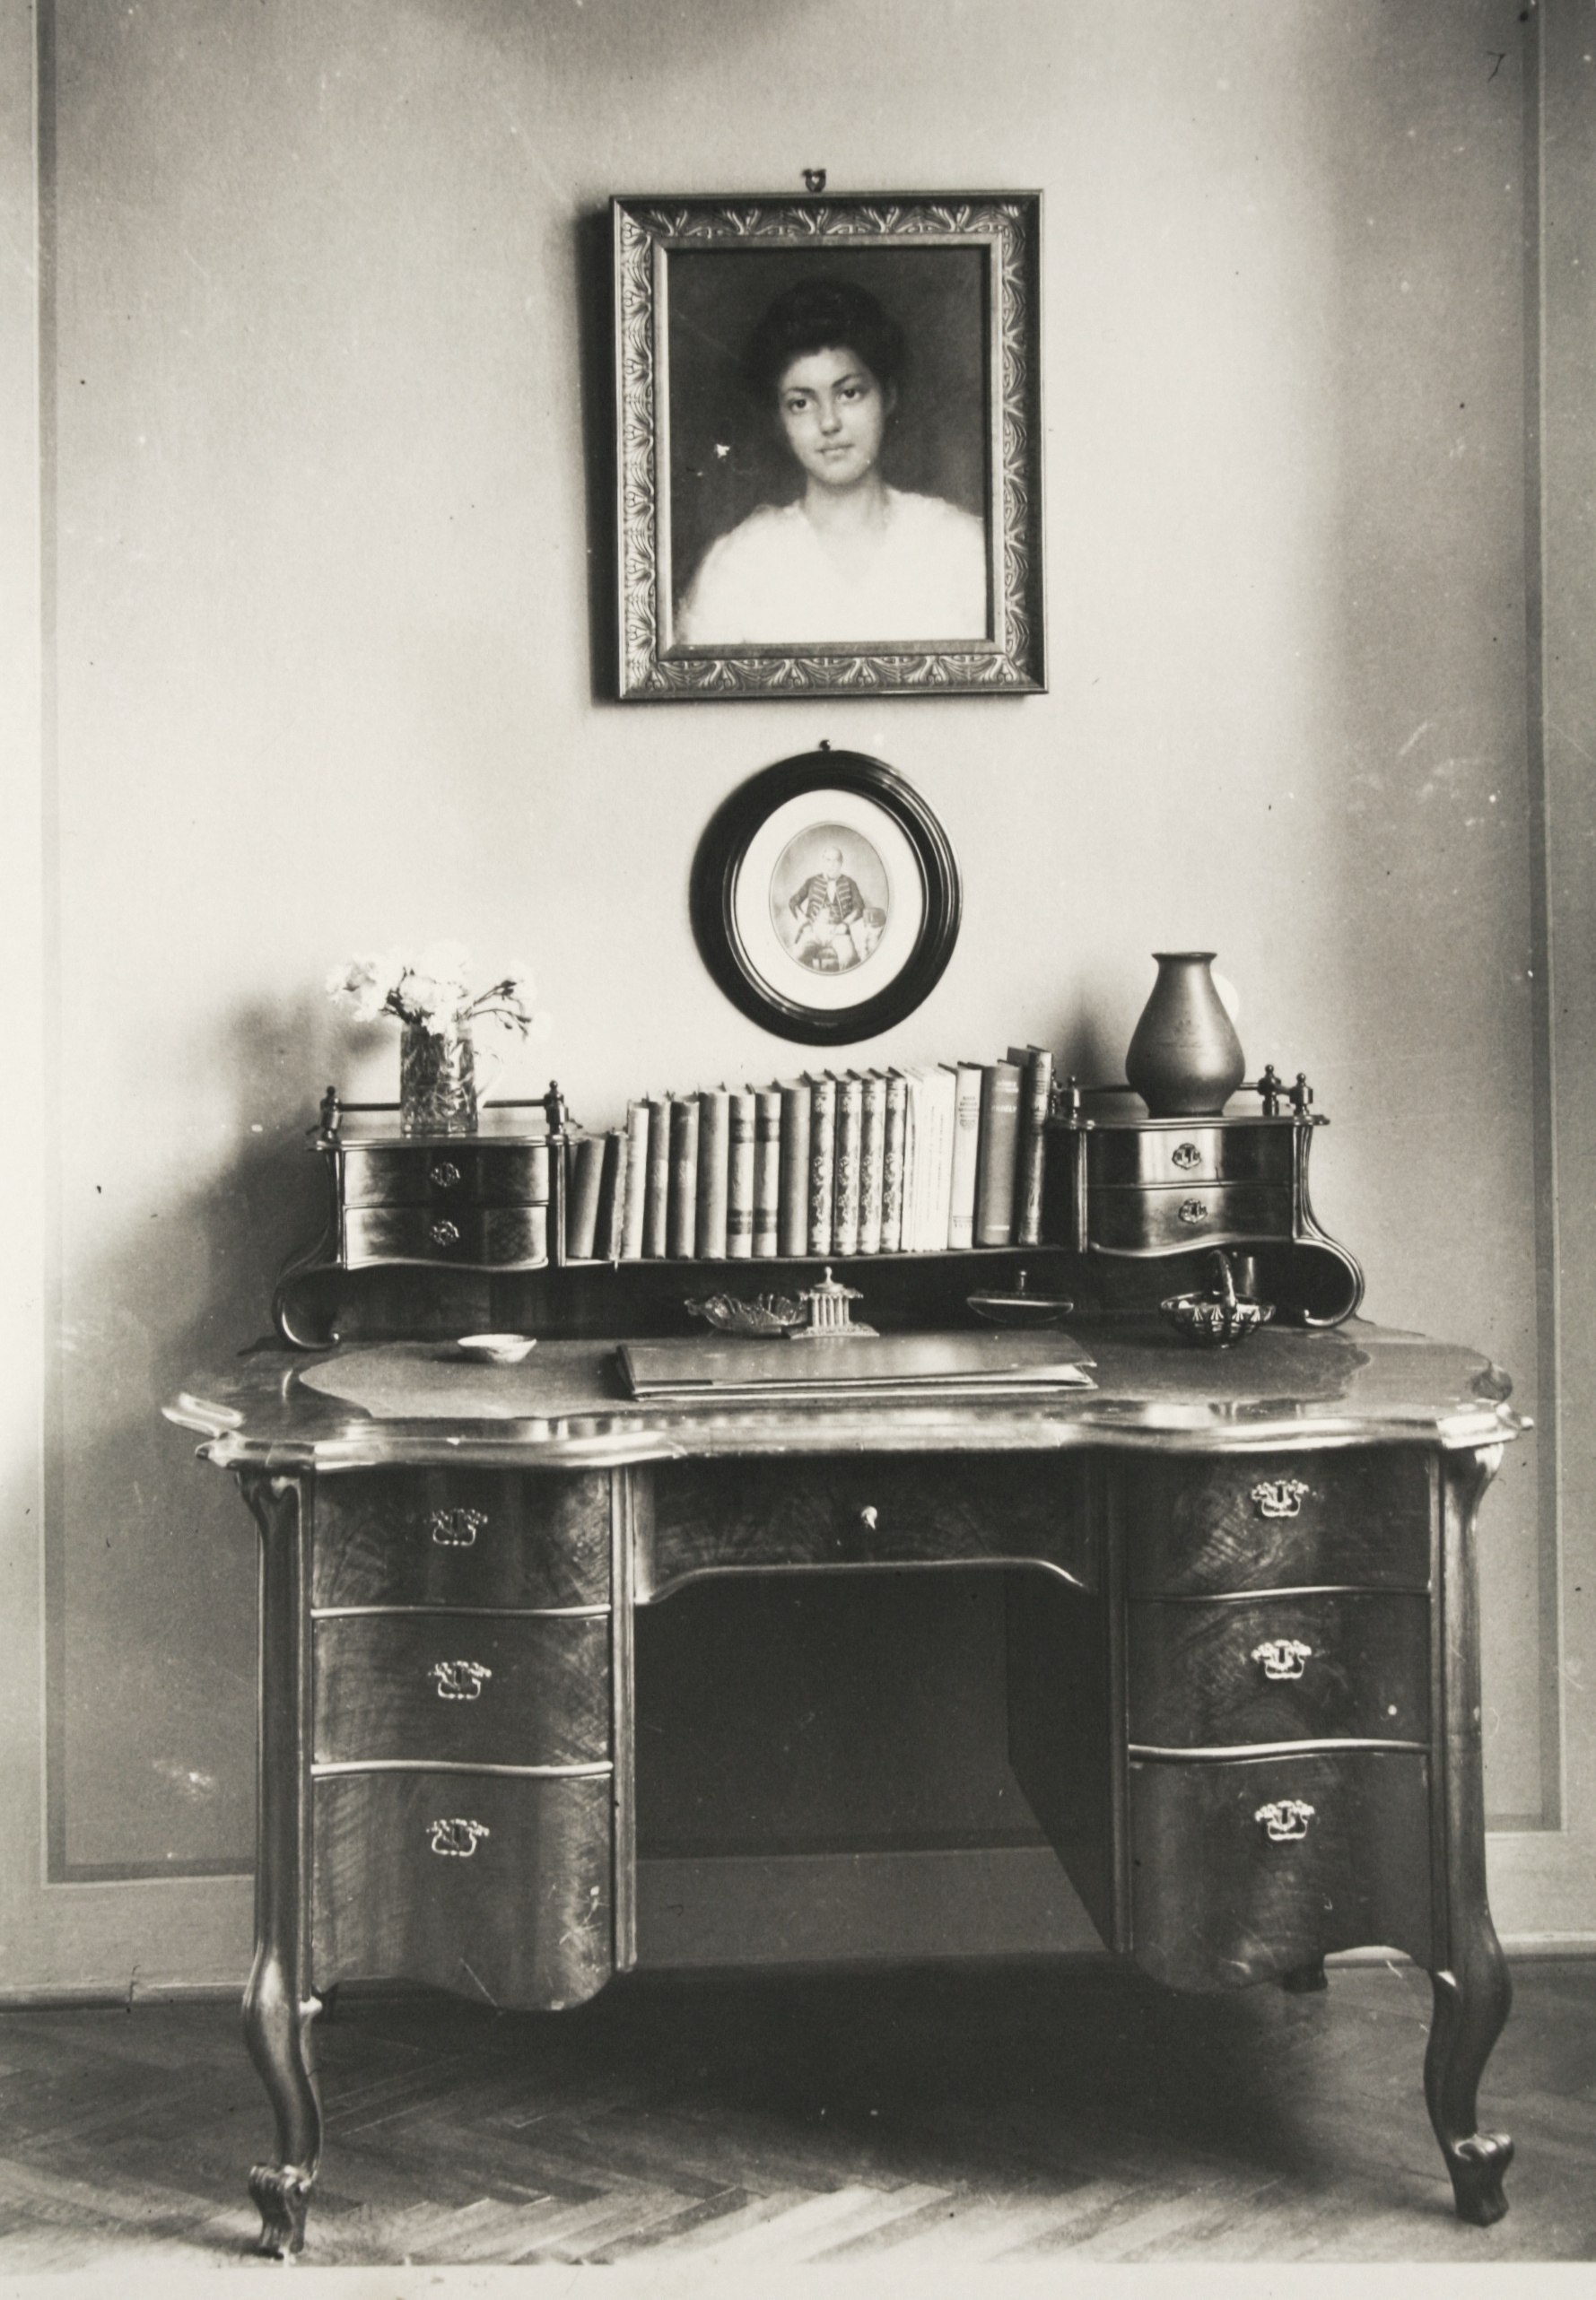 Id. Bibó István könyvtárigazgató íróasztala, 1920-as évek, Szeged. Az asztal fölött ovális keretben nagyapja: Bibó Károly fényképe látható, fölötte felesége: Graul Irén portréja.